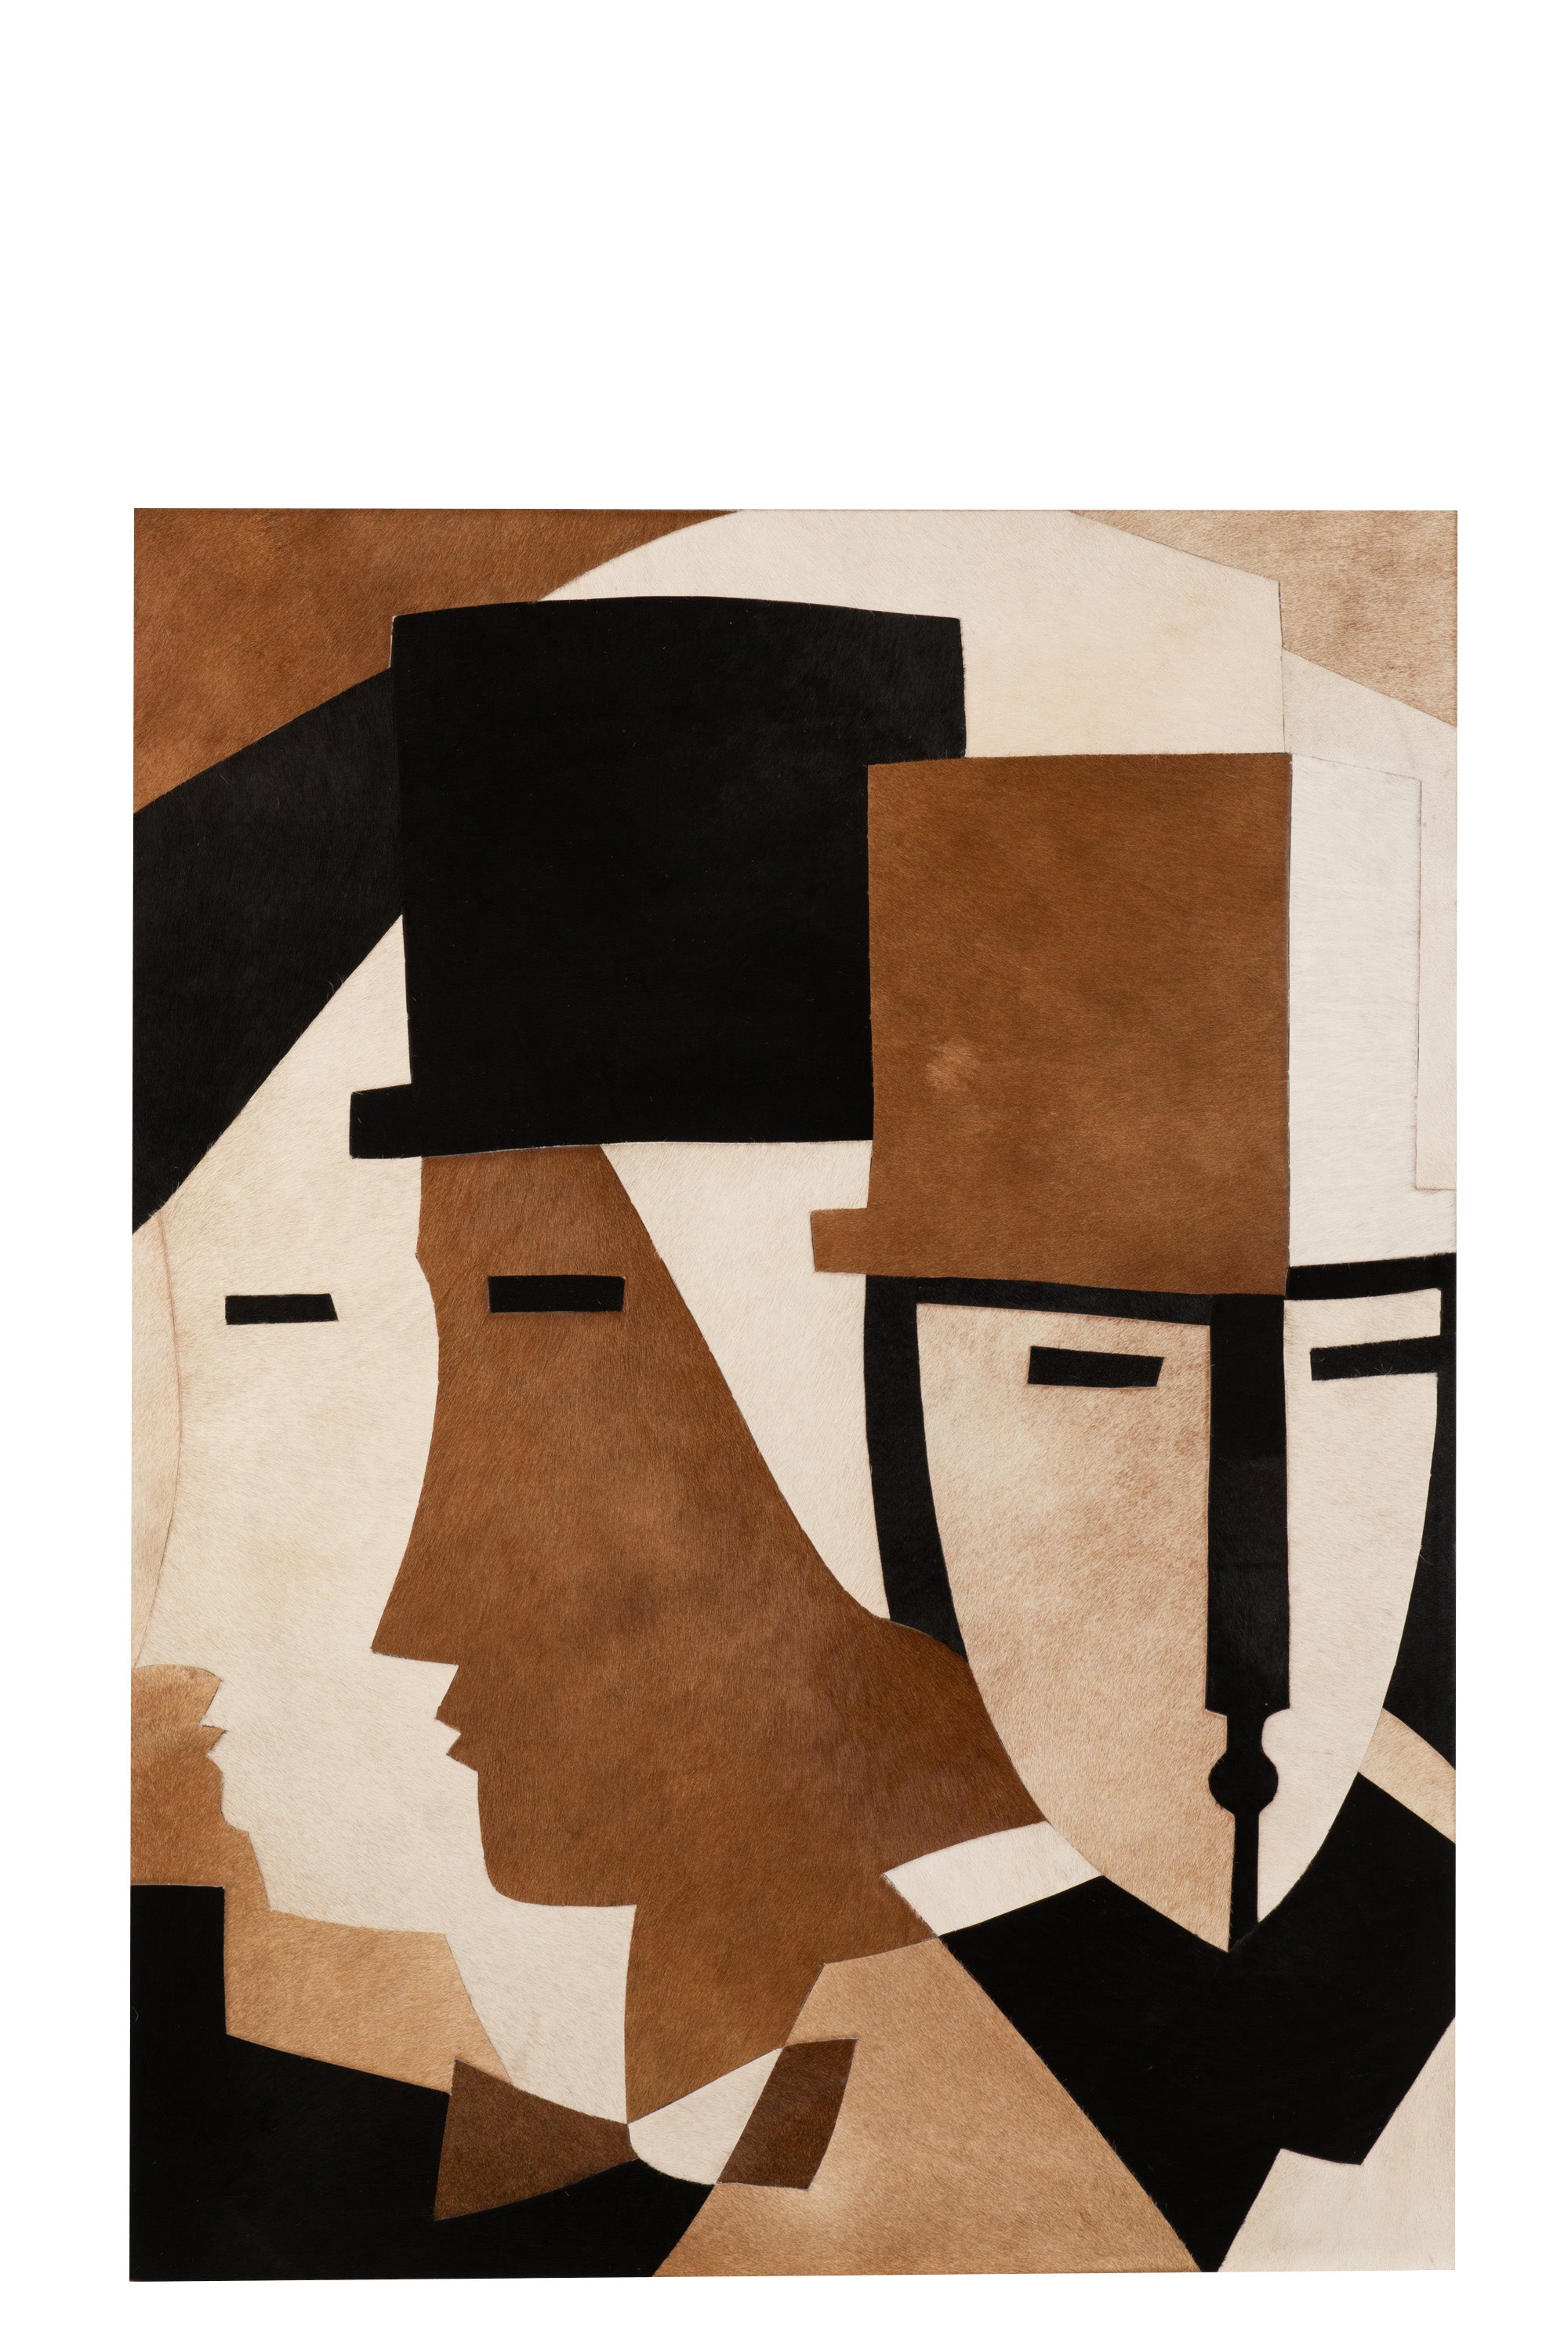 Großes Bild in braun/schwarz gehalten; stilisiert drei Männerköpfe mit Zylinder einer mit Blick nach vorne, zwei schauen nach rechts, Augen nur schwarze Striche.